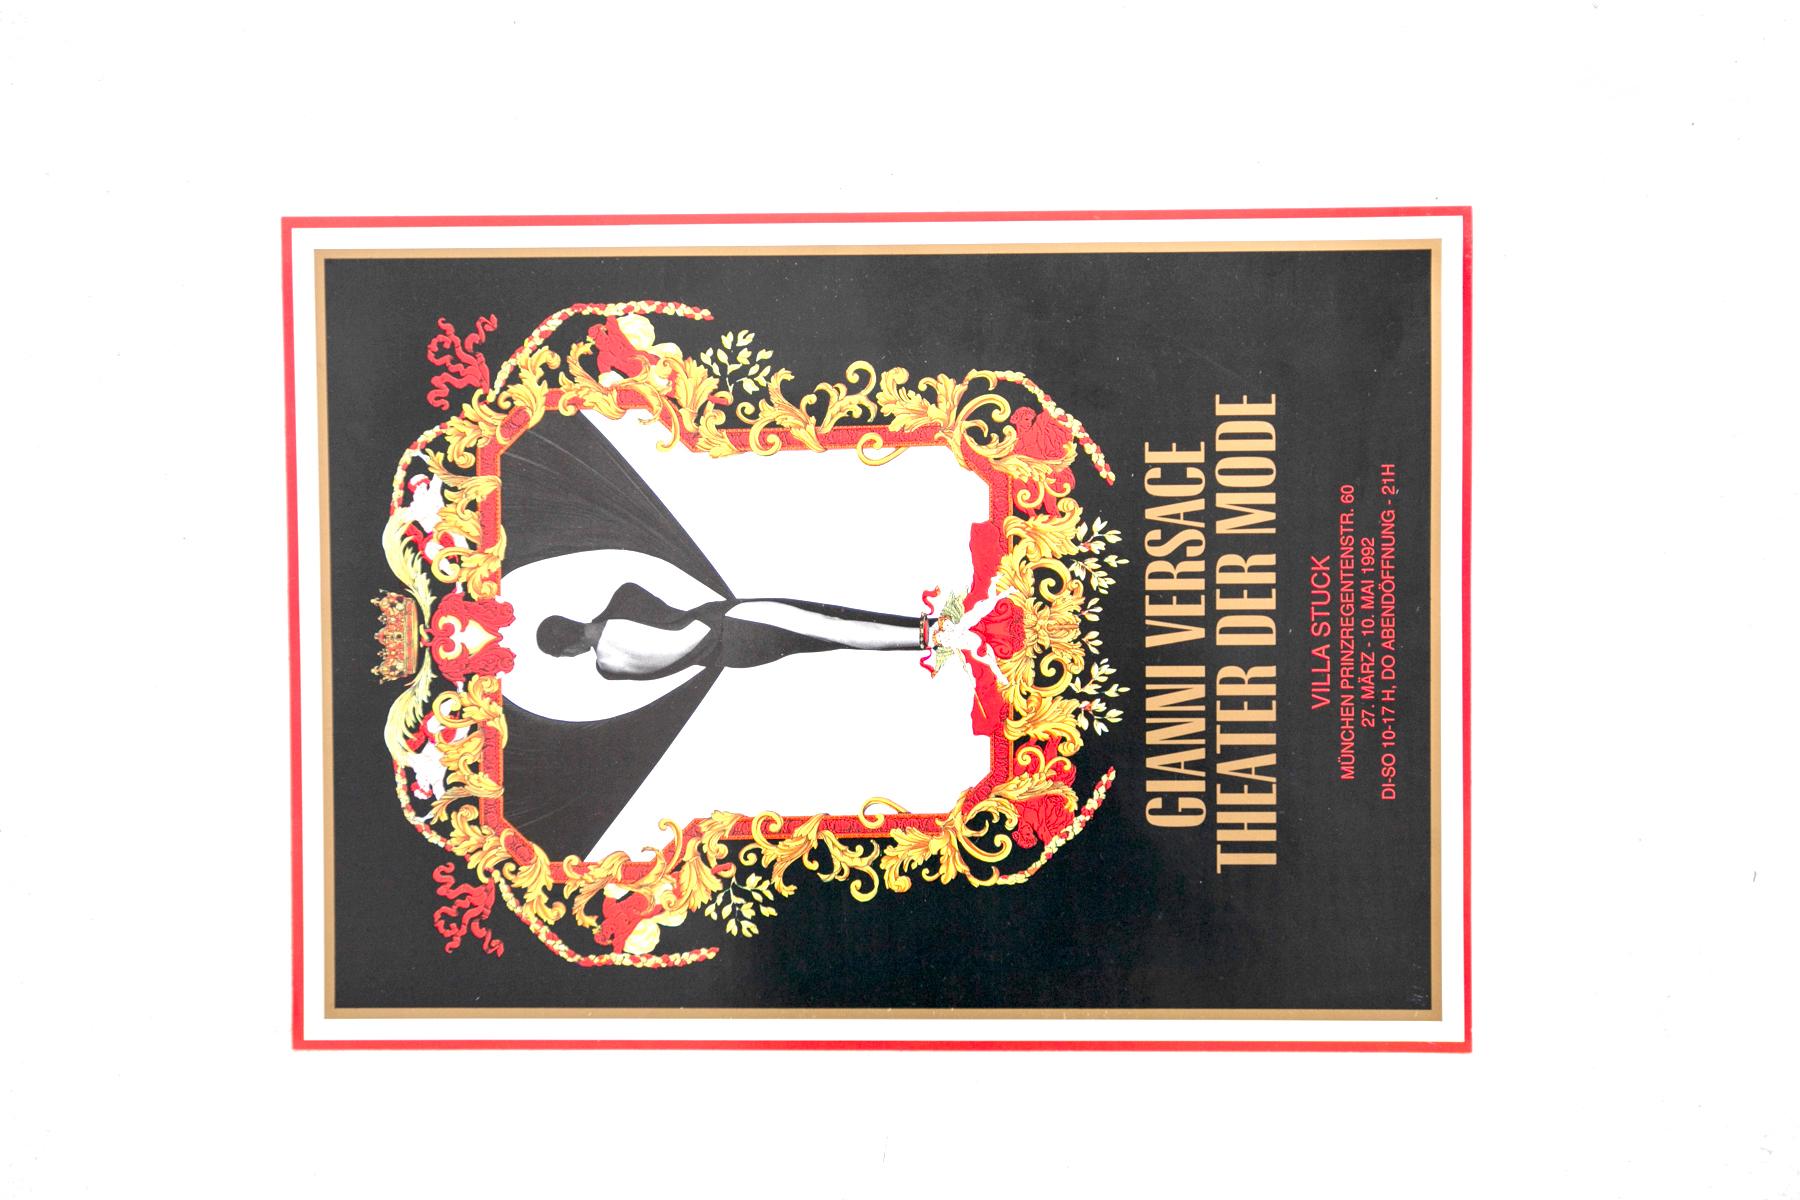 Affiche de Gianni Versace pour l'ouverture de l'exposition 